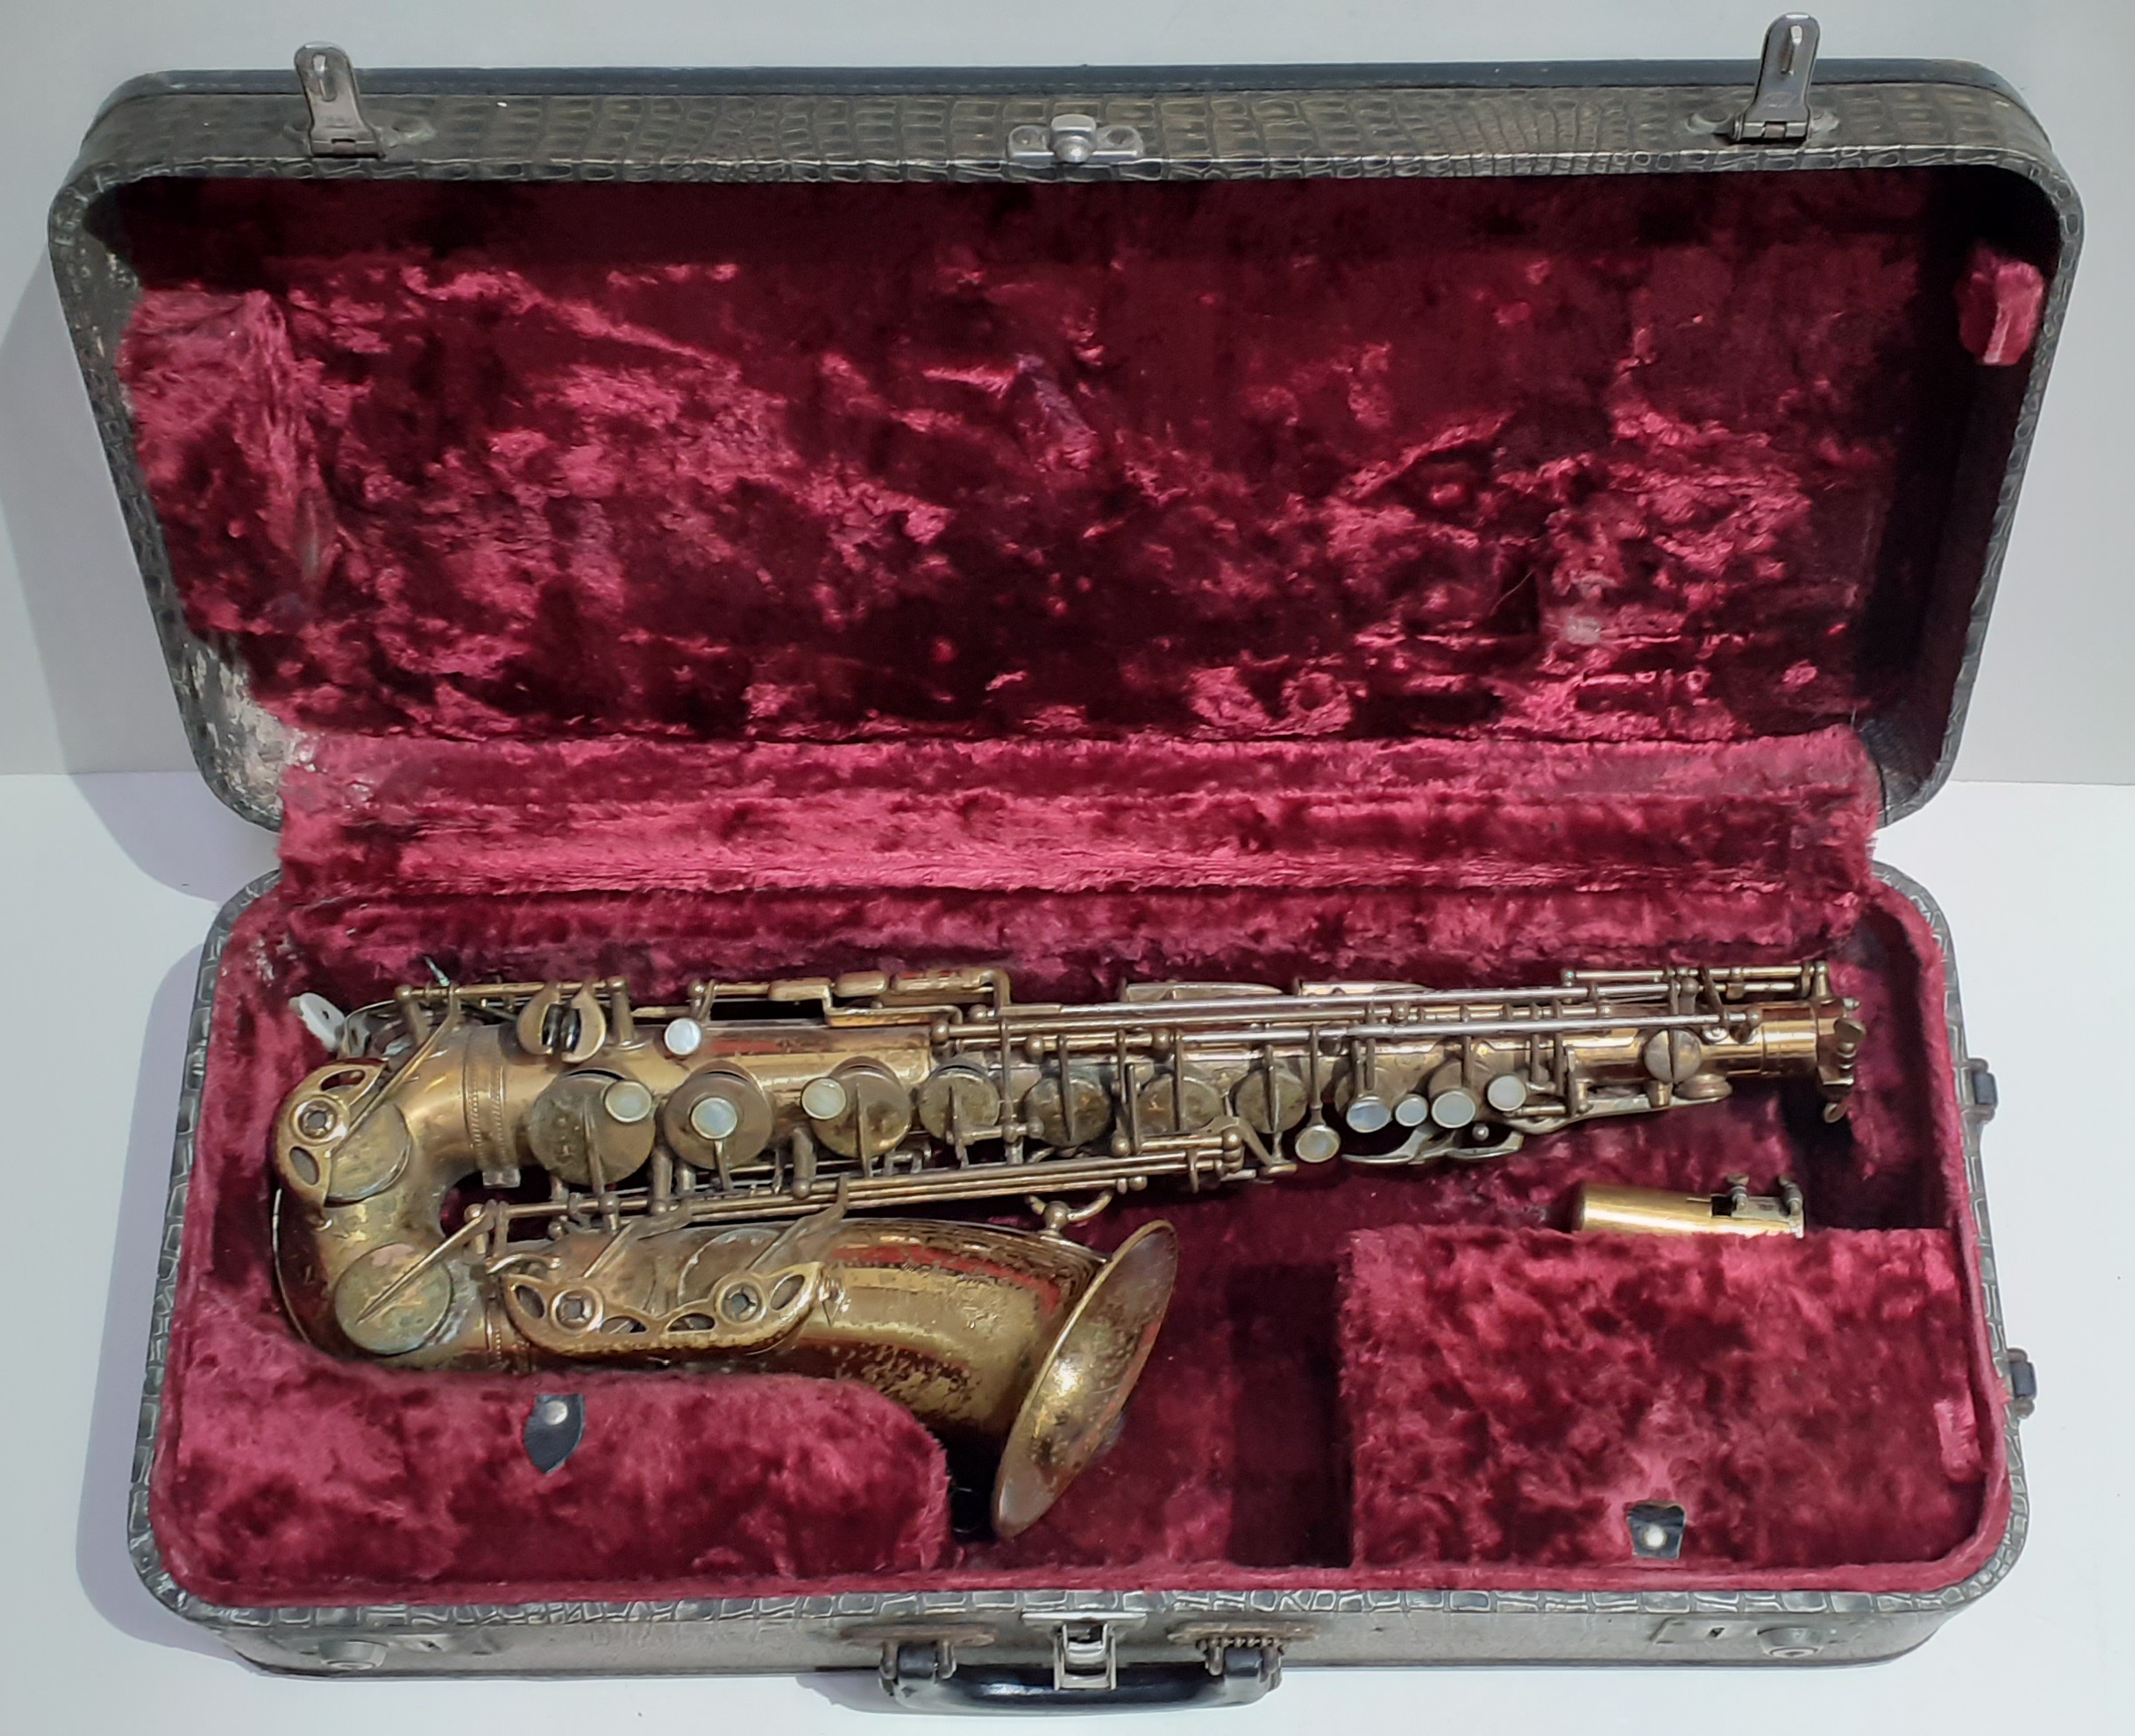 A Selmer Super Action alto saxophone circa 1950s, with Selmer Soloist E mouthpiece.